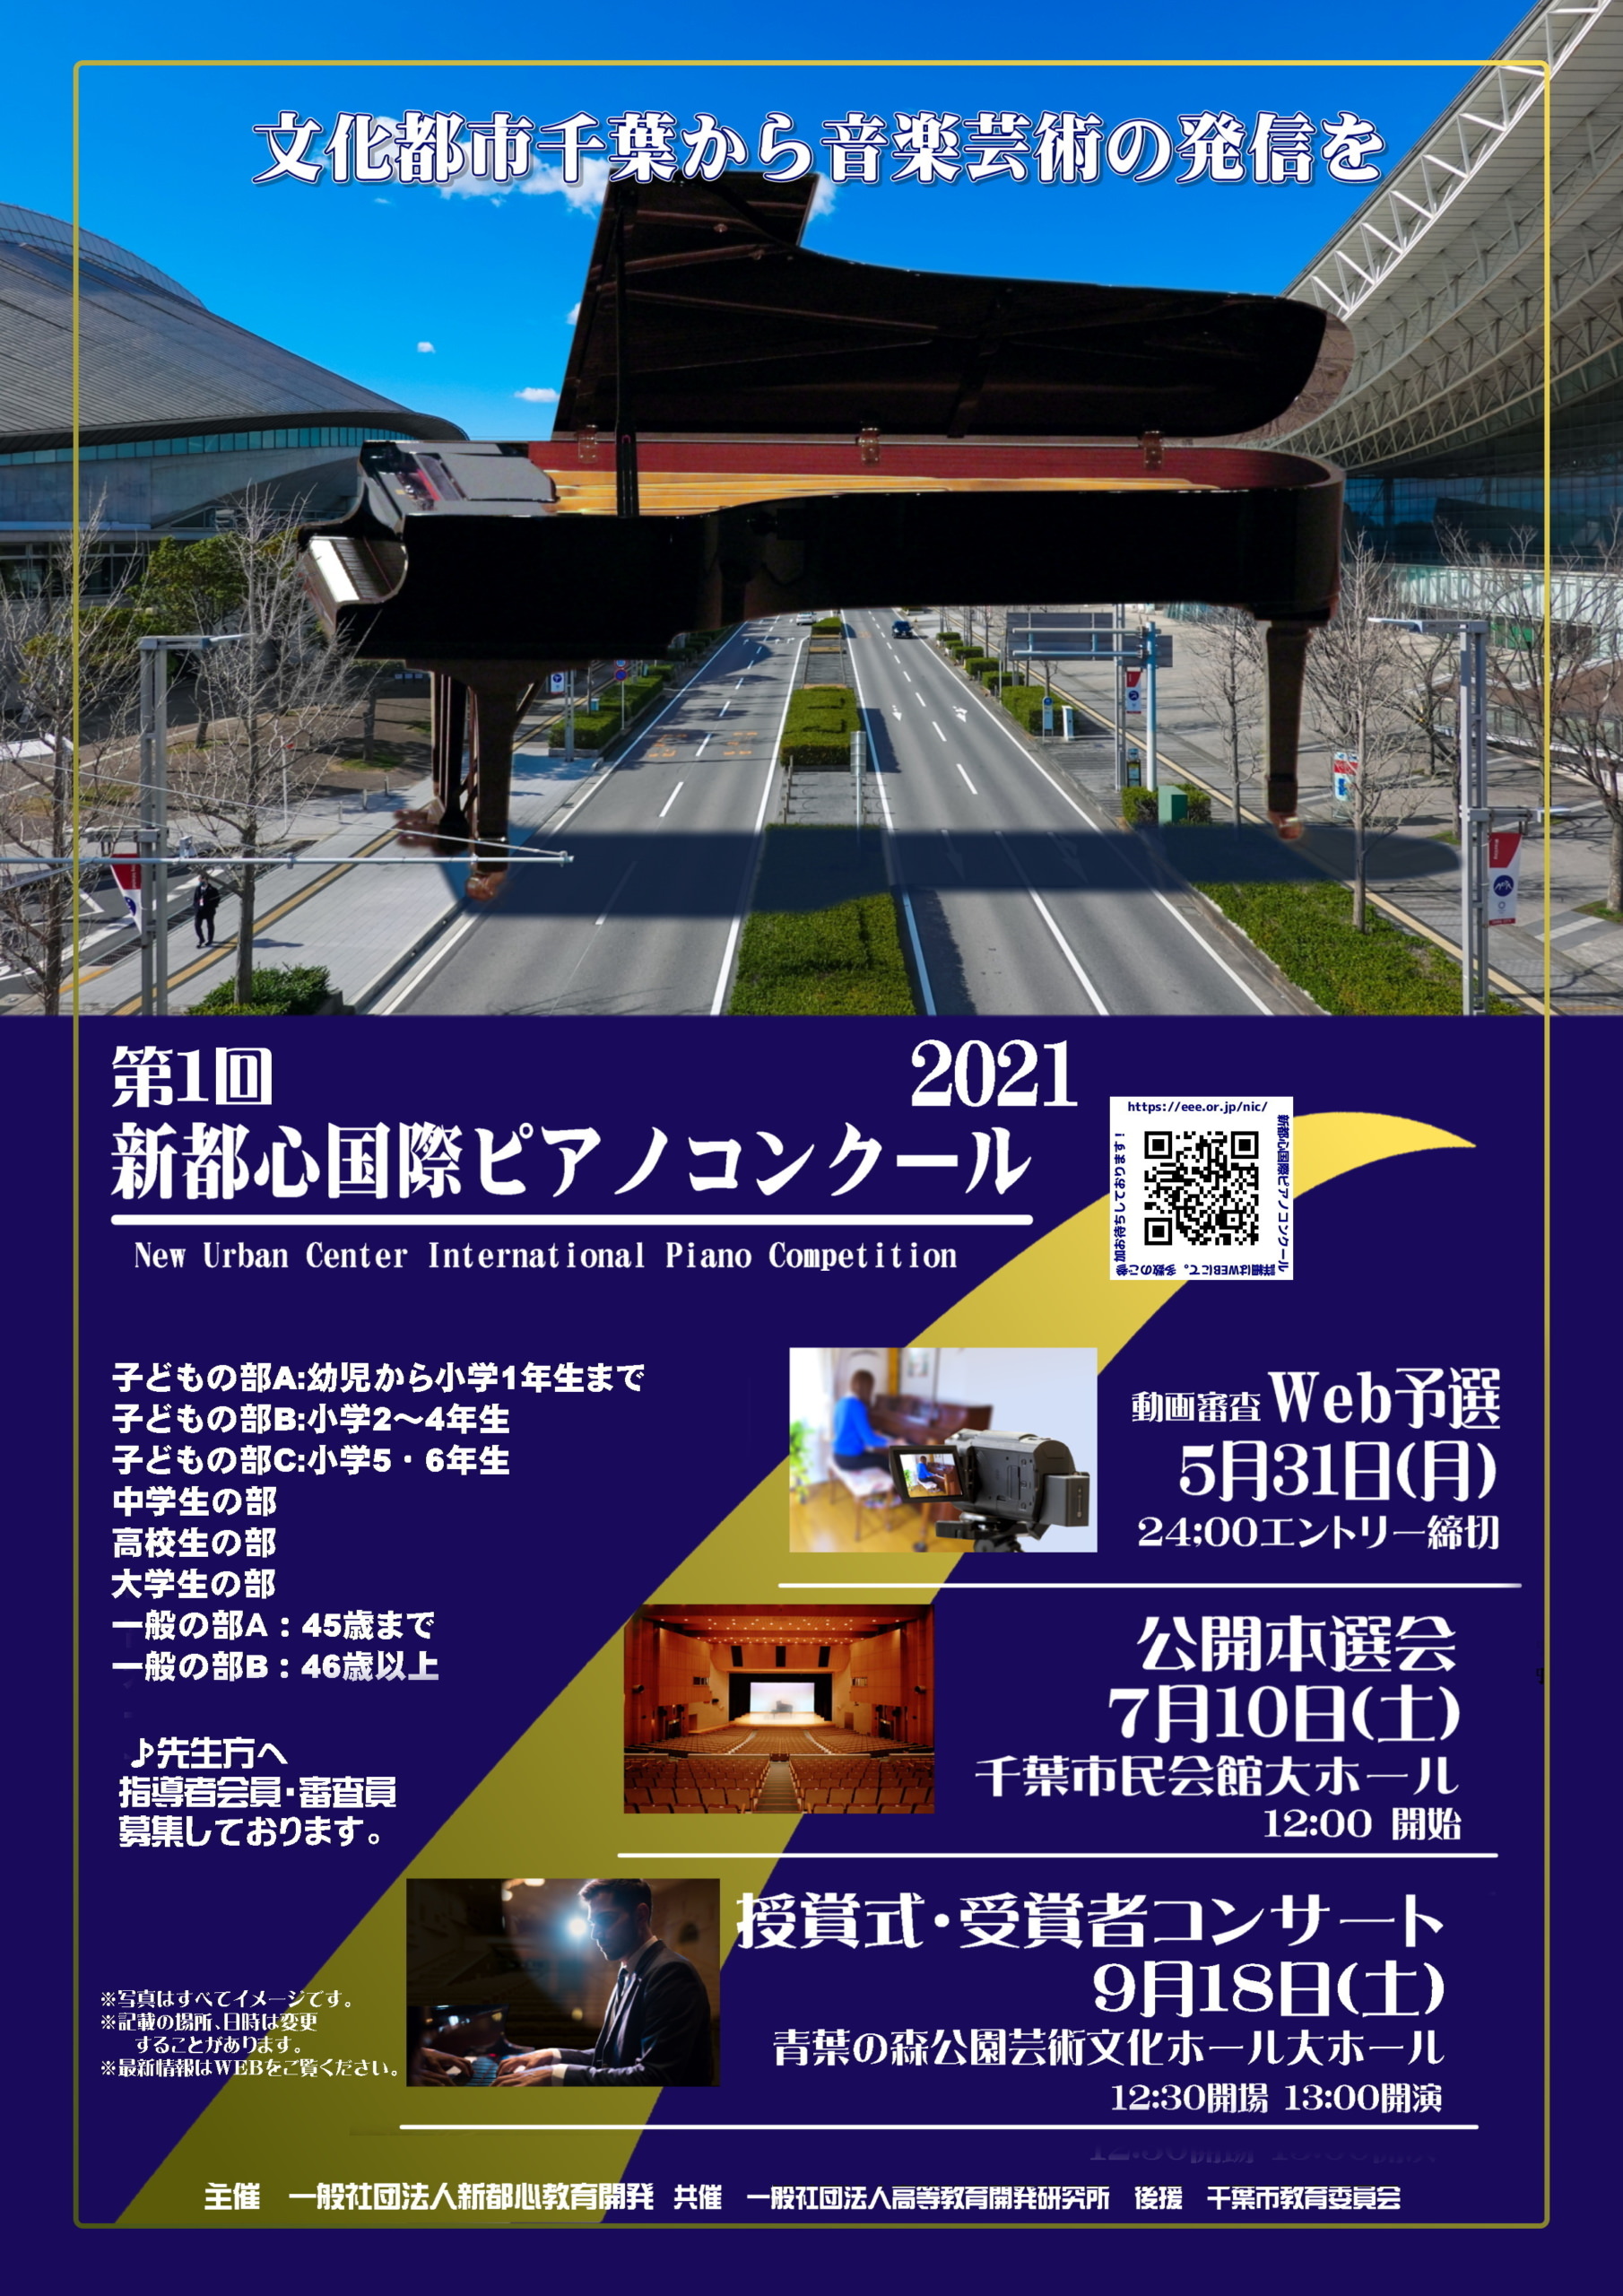 「第1回新都心国際ピアノコンクール2021」開催　
WEB予選(動画審査)8部門エントリー4月7日(水)受付開始